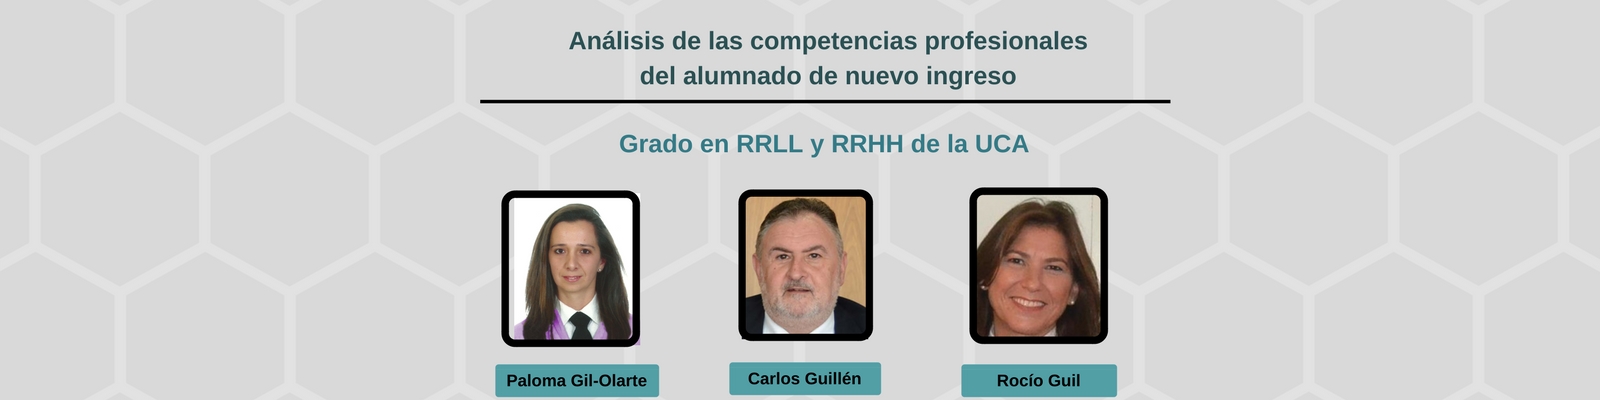 Análisis de las competencias profesionales del alumnado de nuevo ingreso del Grado en RRLL y RRHH de la UCA. Por Paloma Gil-Olarte, Carlos Guillén y Rocío Guil